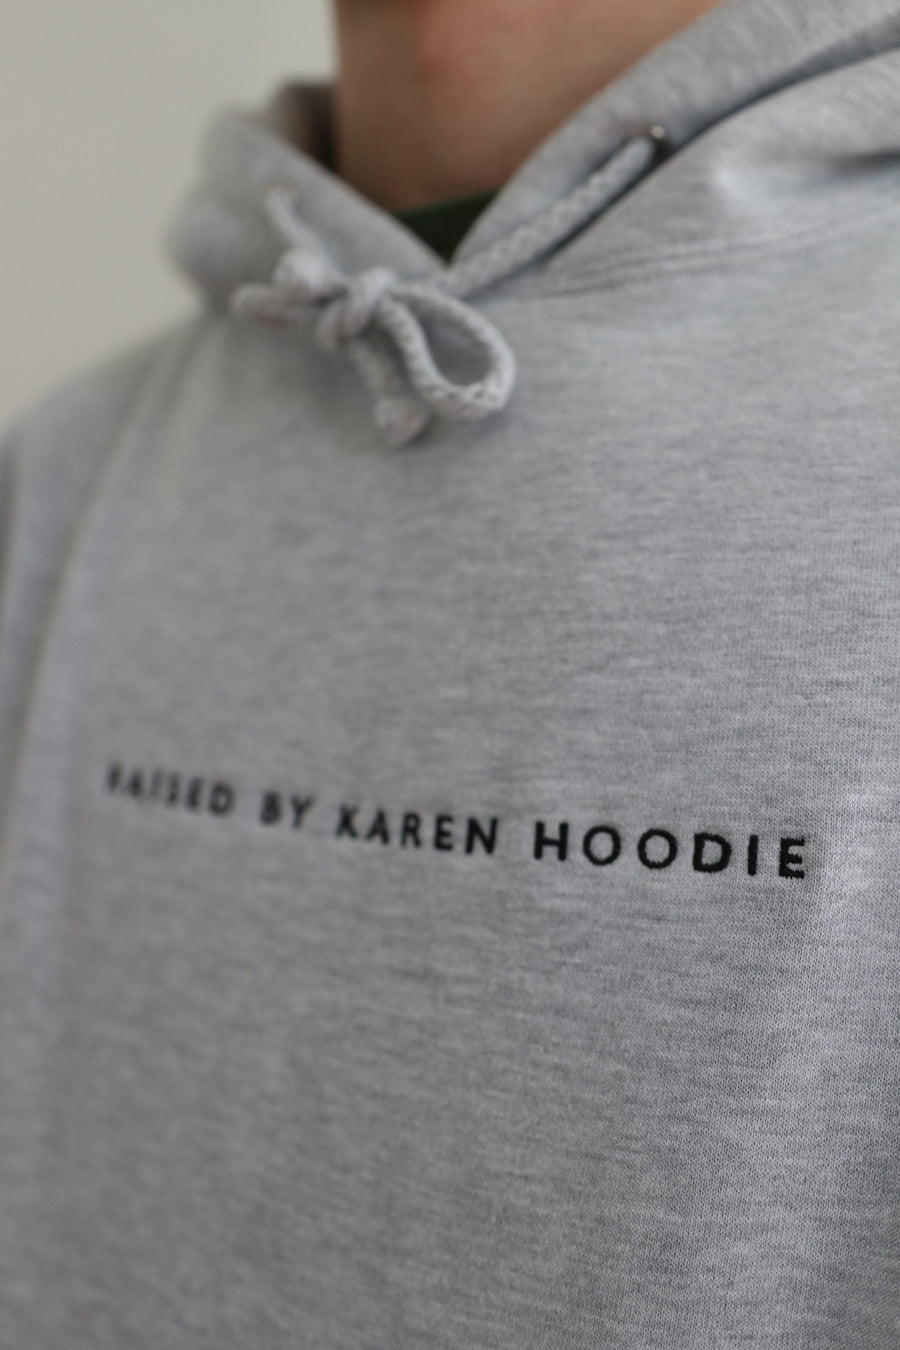 'Raised by Karen Hoodie' (P)